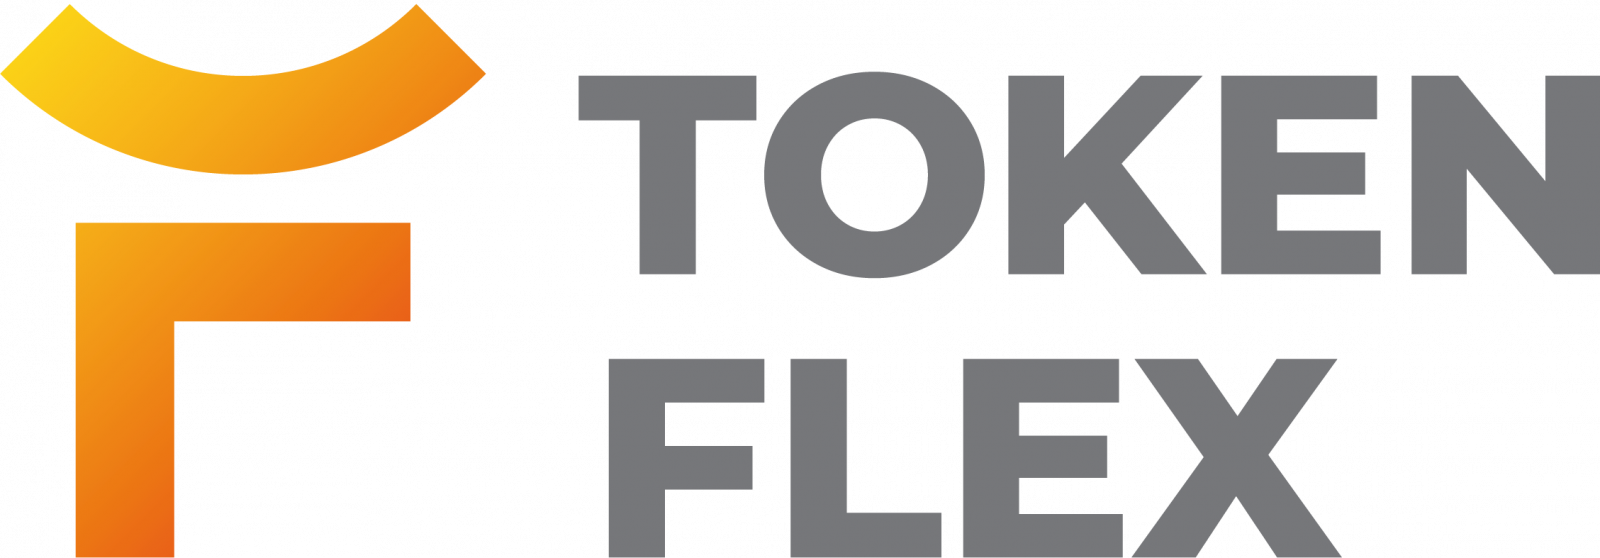 Flex логотип. Token логотип. Флекс токен. Флекс вольт логотип. Флекс инн